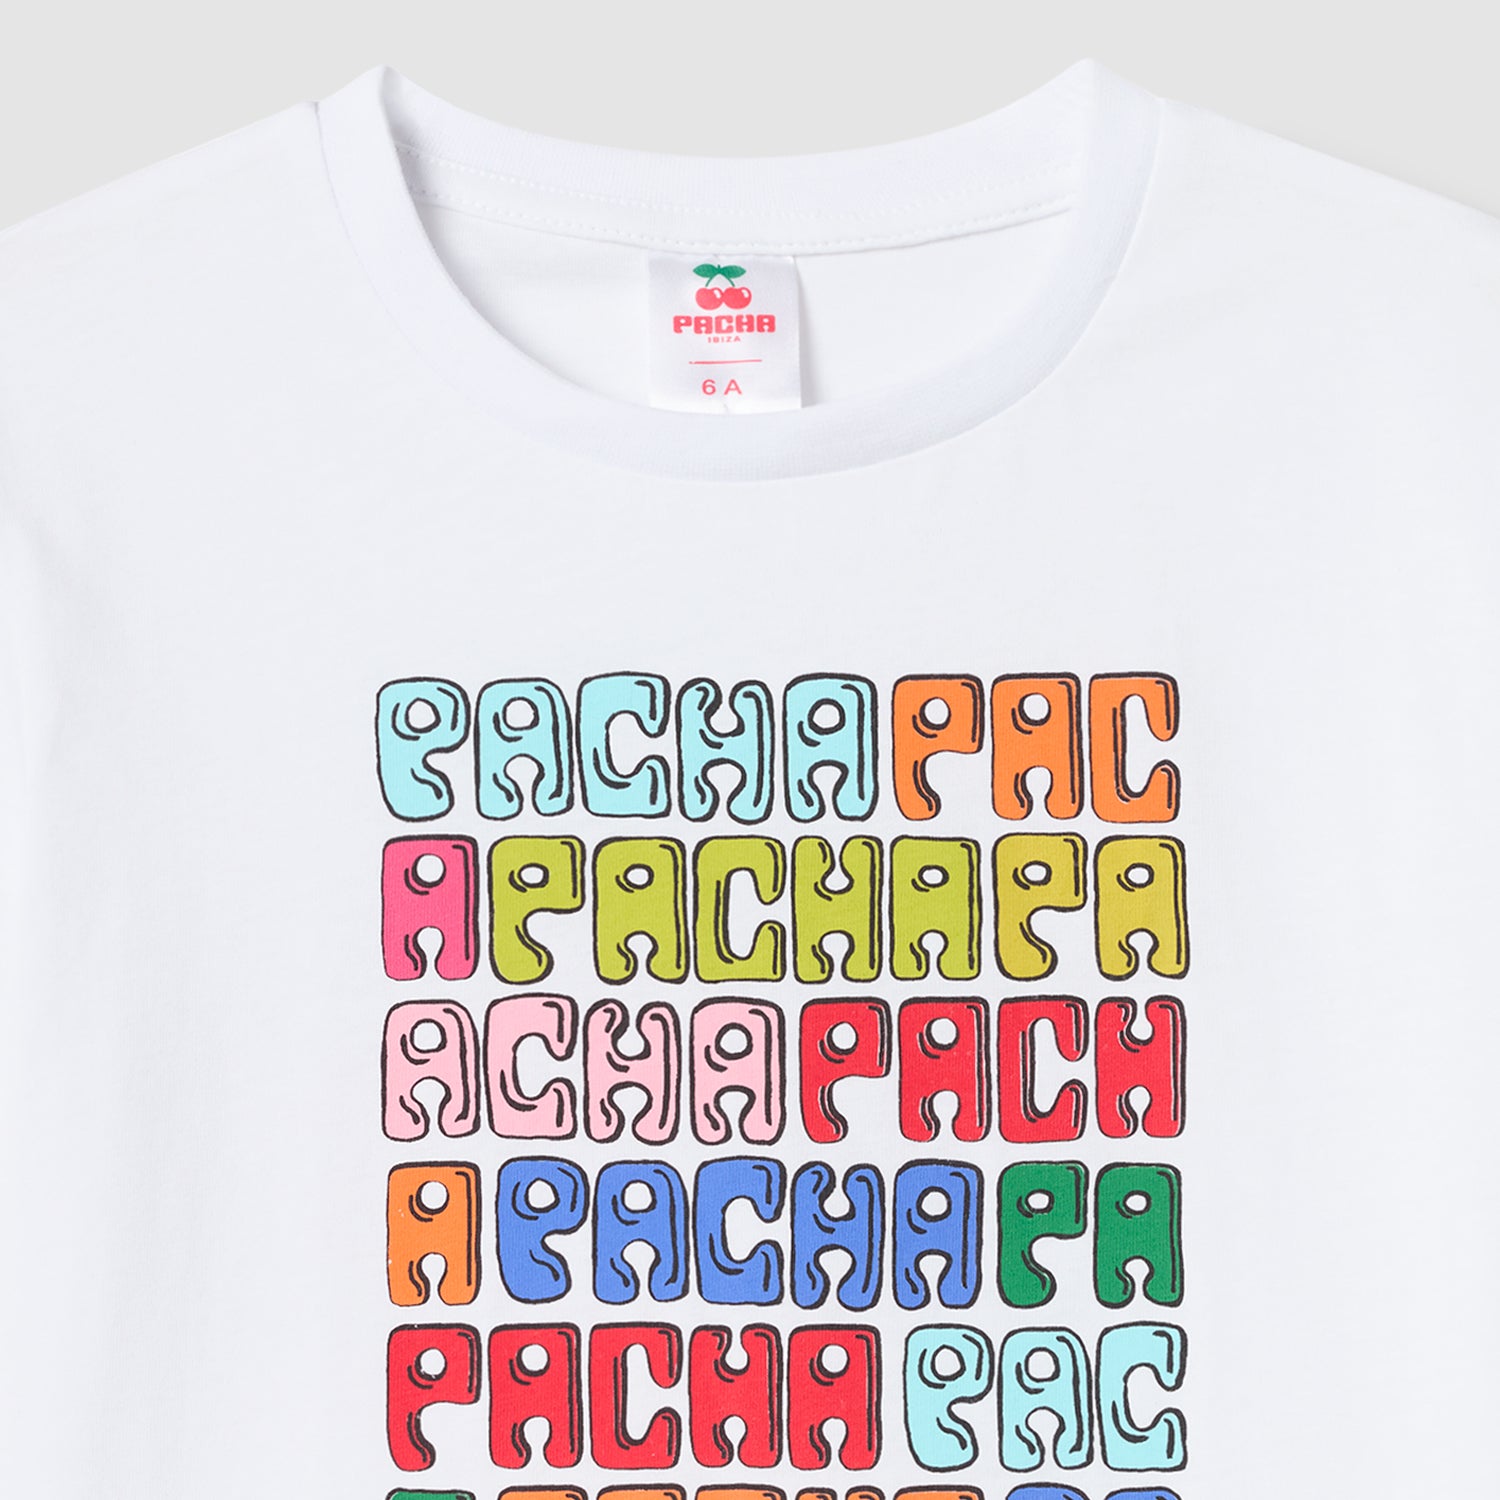 Camiseta PachaPacha